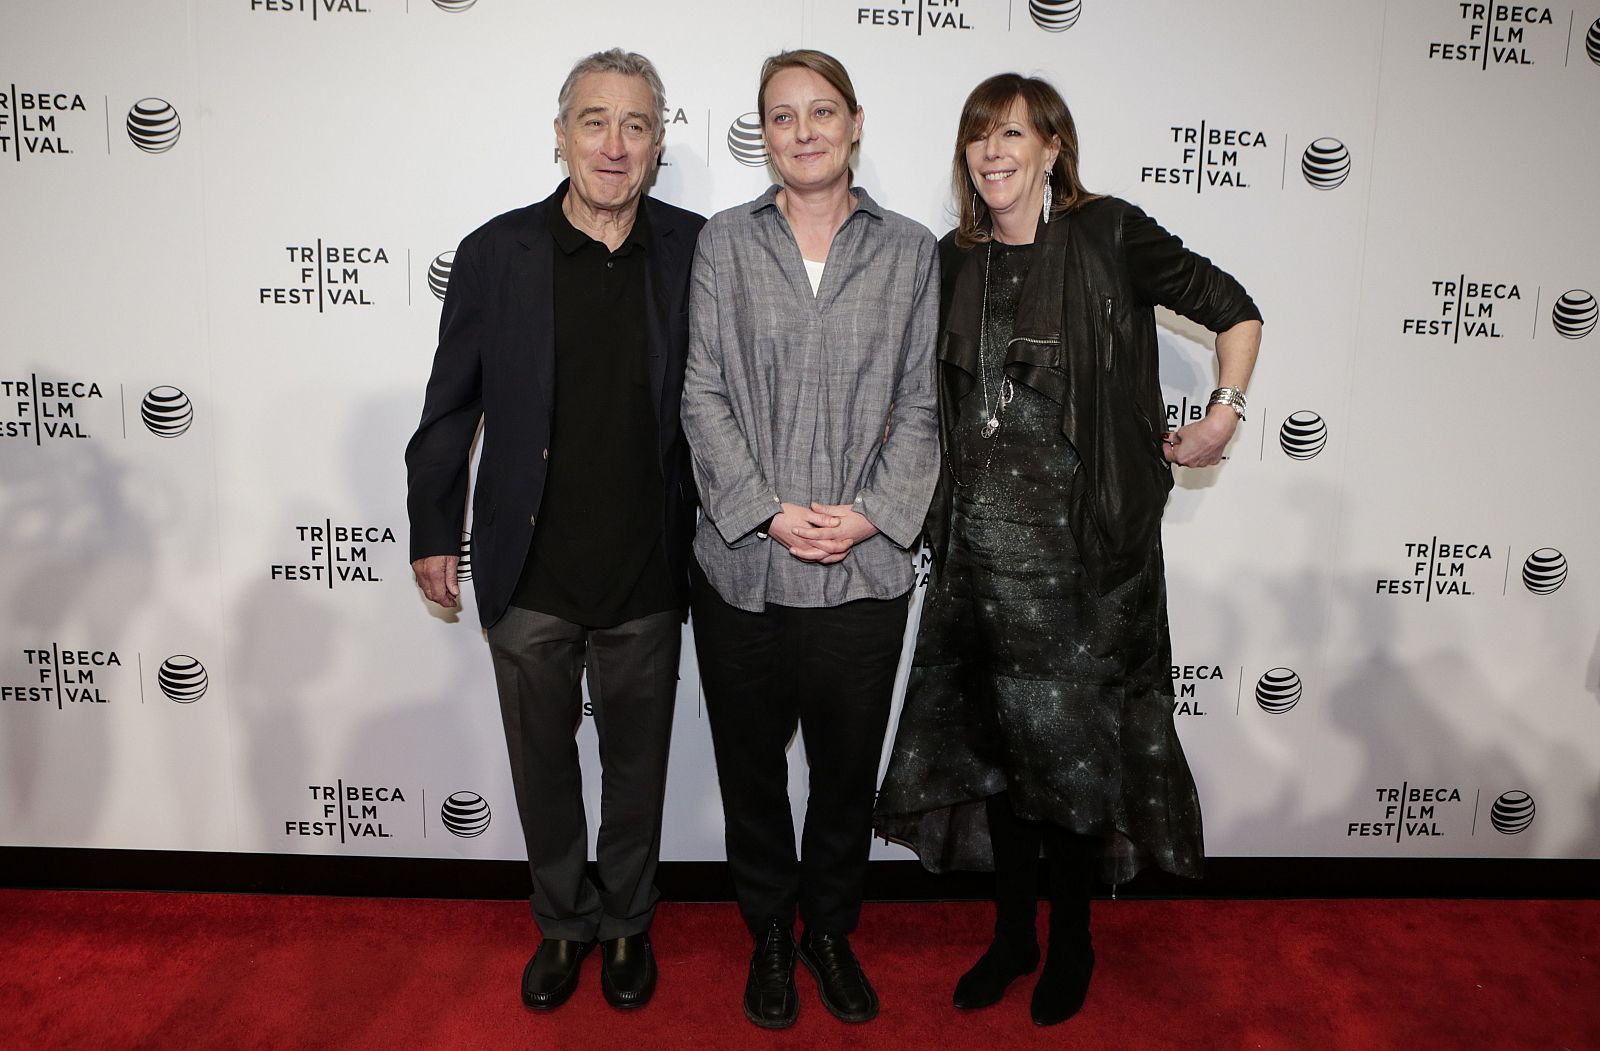 Los cofundadores del festival deTribeca, Robert De Niro y Jane Rosenthal, posan junto a la directora danesa Camilla Nielsson, que ha recibido el galardón a mejor documental por su cinta 'Democrats'.